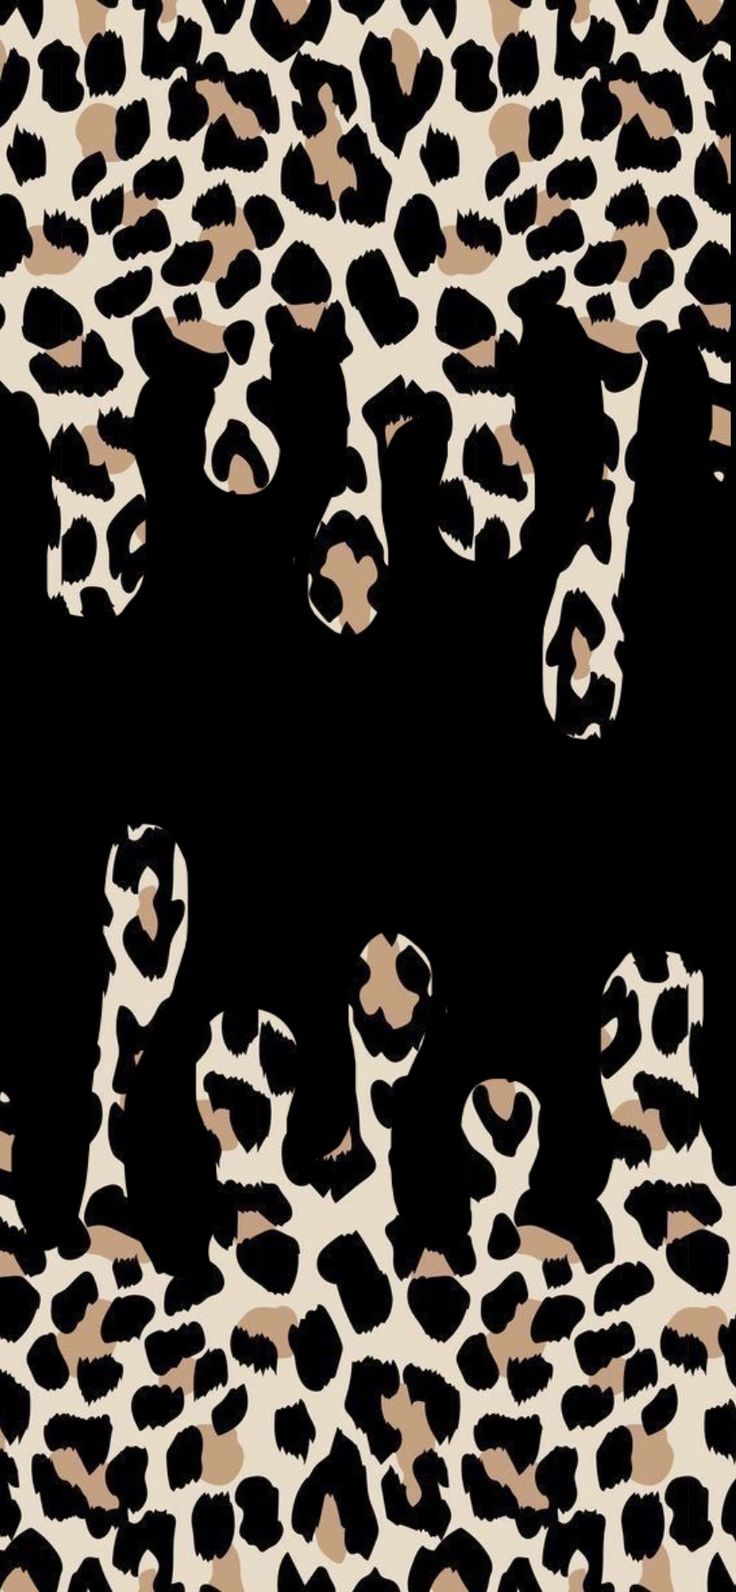  Leopardenmuster Hintergrundbild 736x1592. Payten T. On Background Ideas Astetics. Cheetah Print Wallpaper, Leopard Print Wallpaper, Cute Patterns Wallpaper